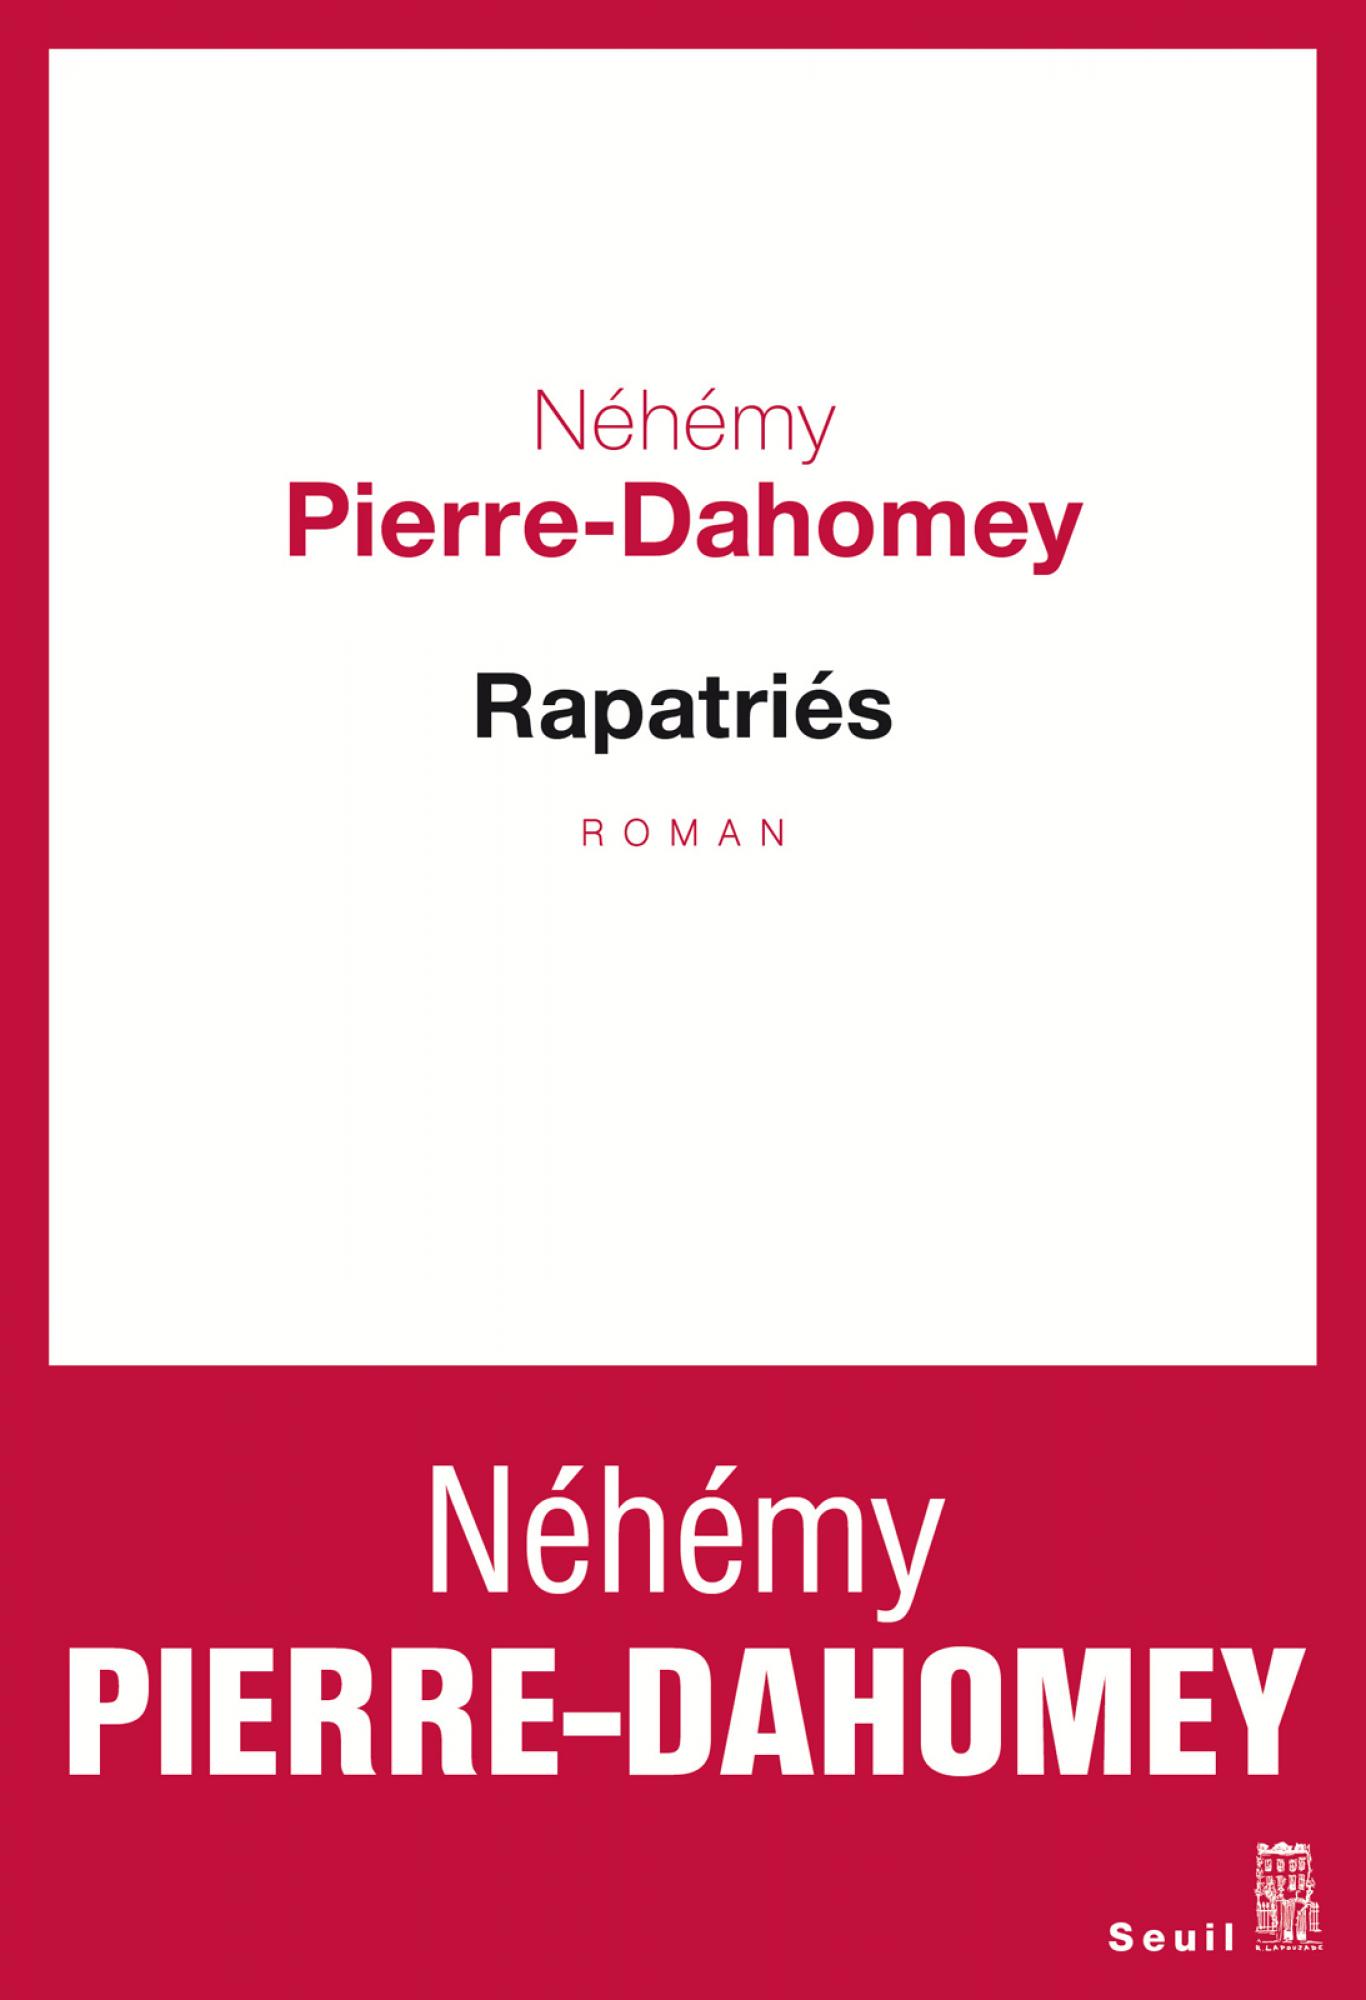 alt="refugies-nehemy-pierre-dahomey"